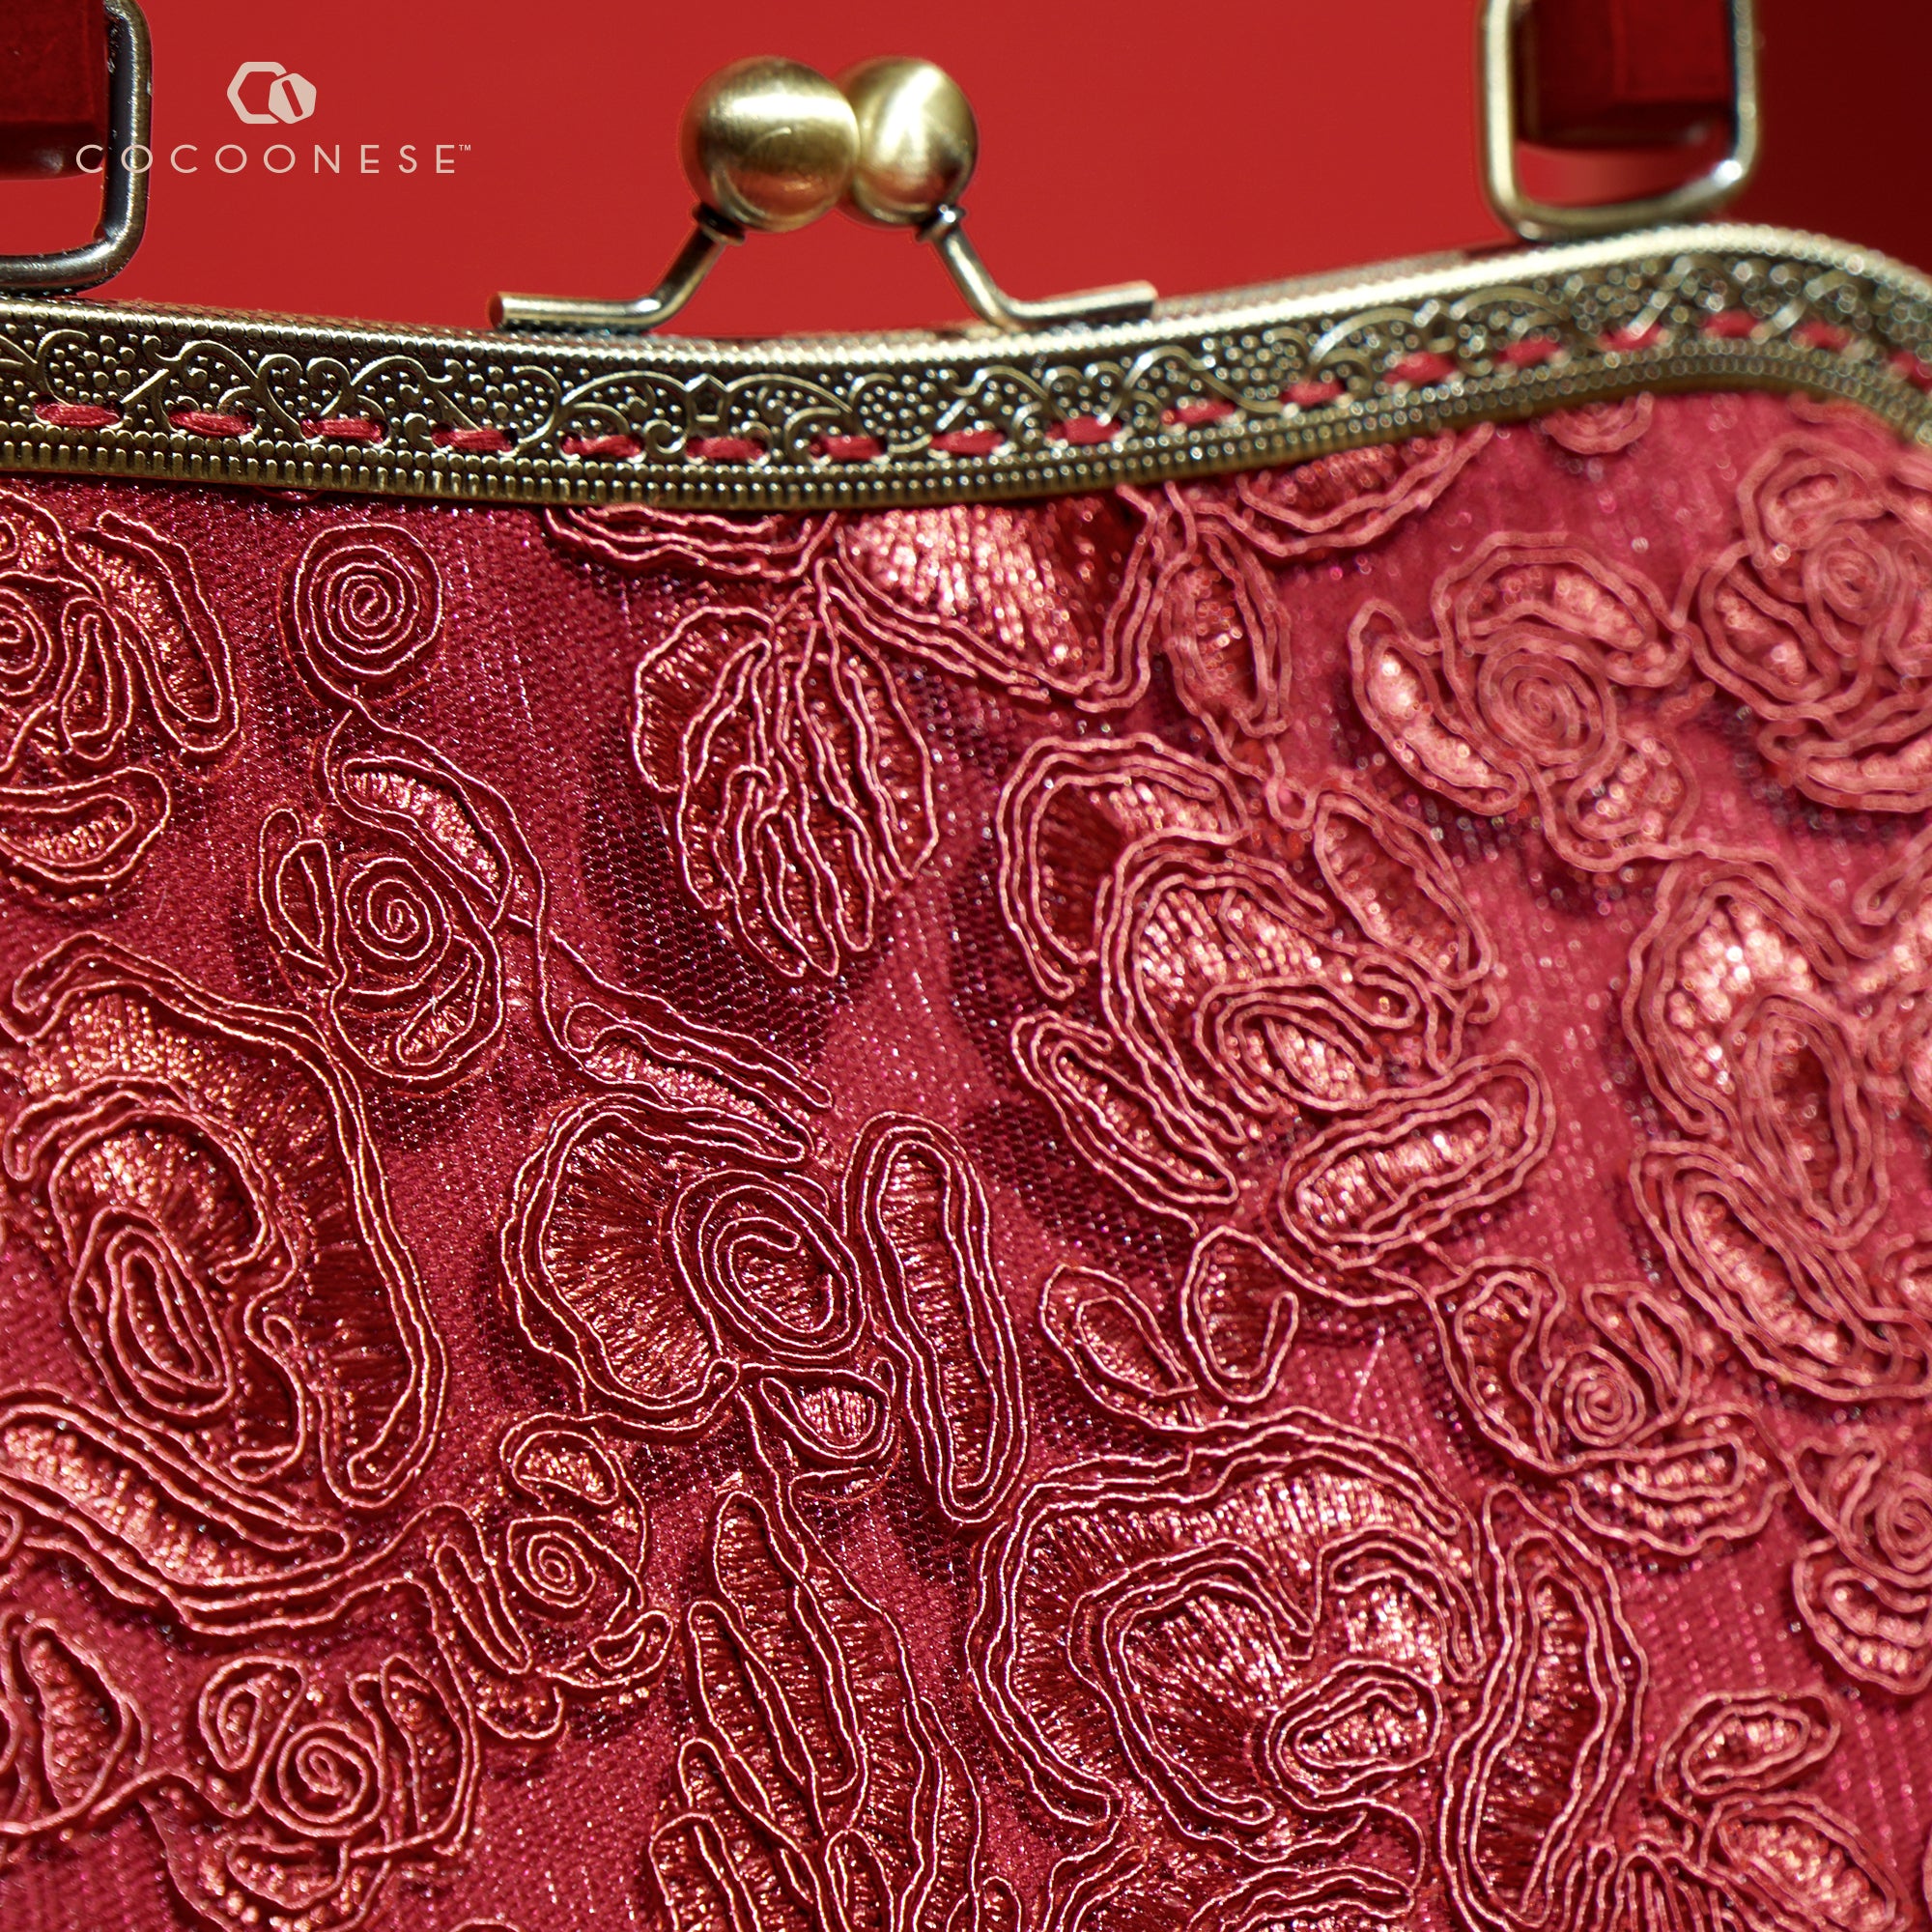 Clasp Handbag - Vintage Lace